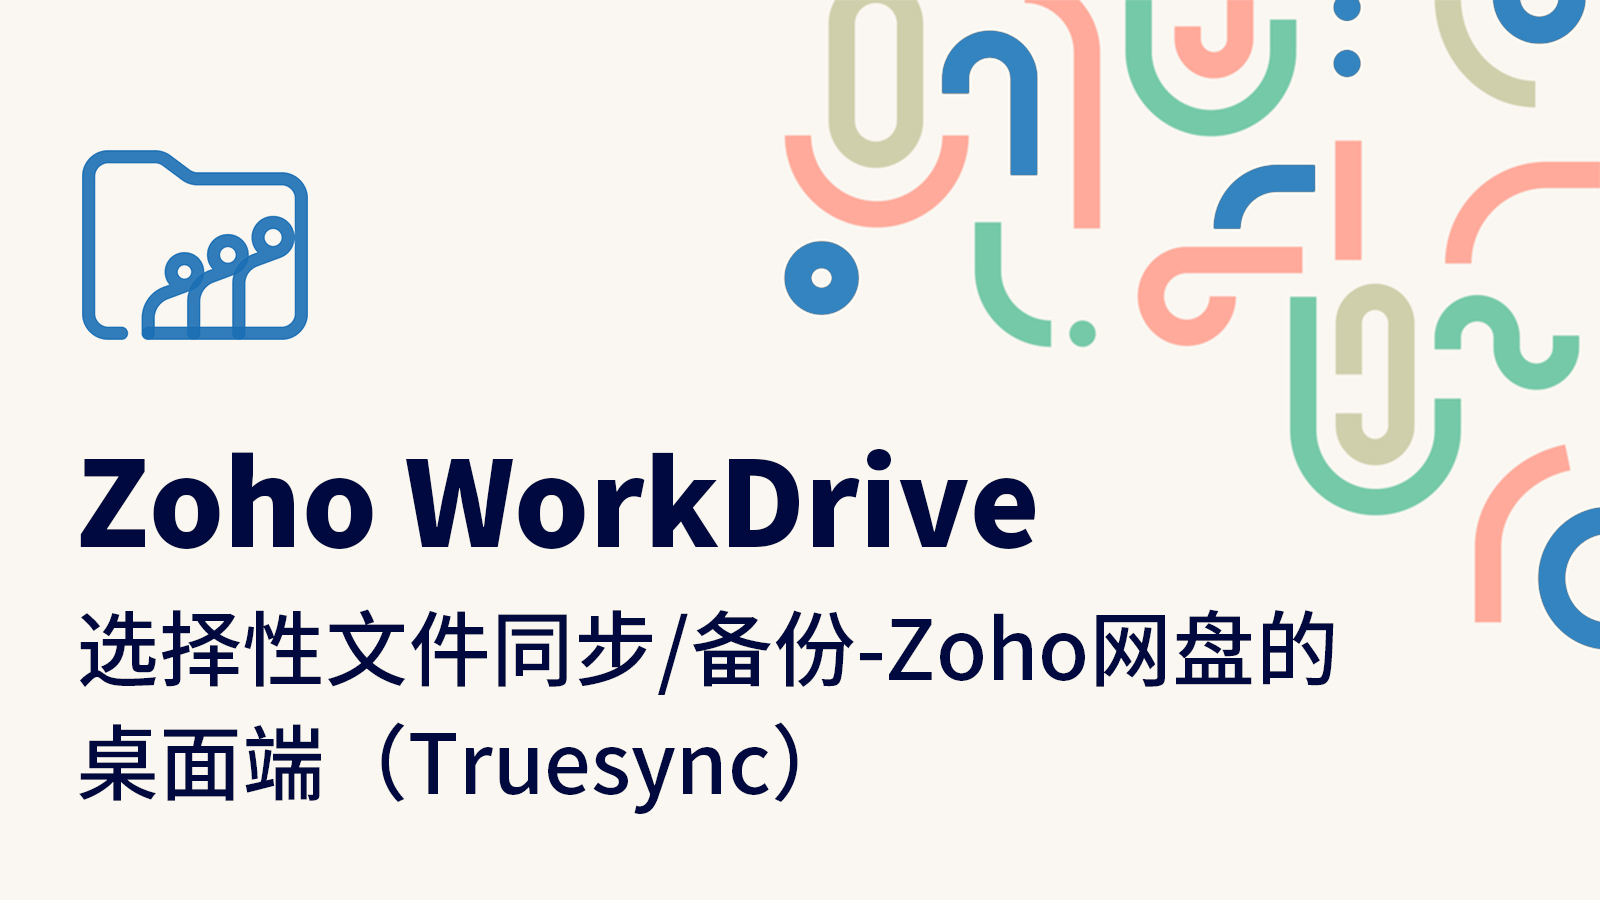 选择性文件同步/备份-Zoho网盘的桌面端（Truesync）